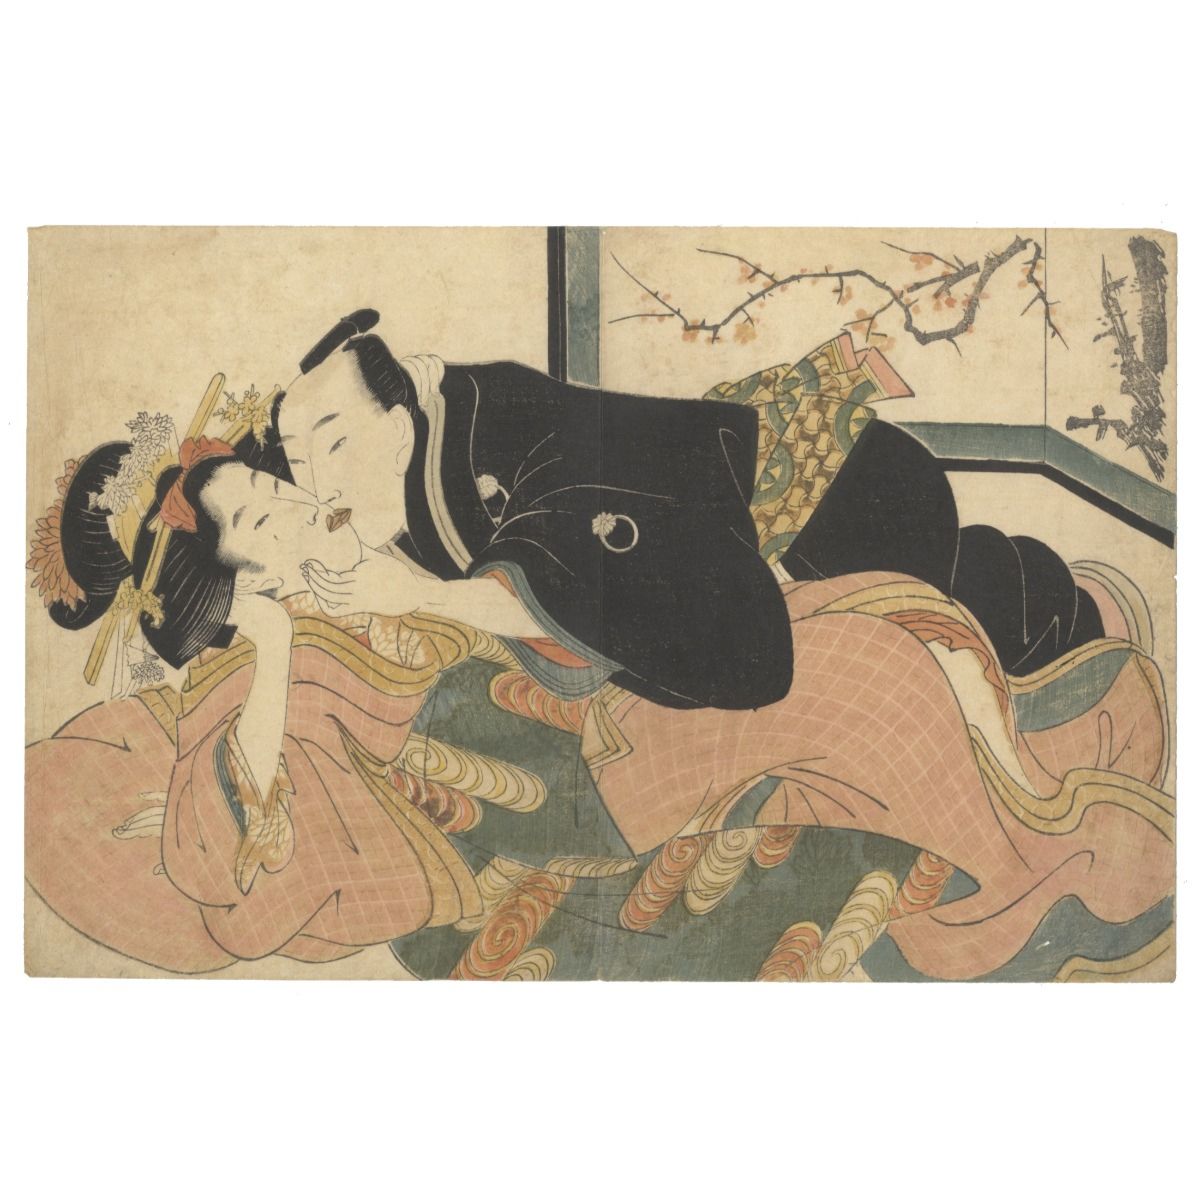 Keisai, Abuna-e, Kiss, Erotic Print